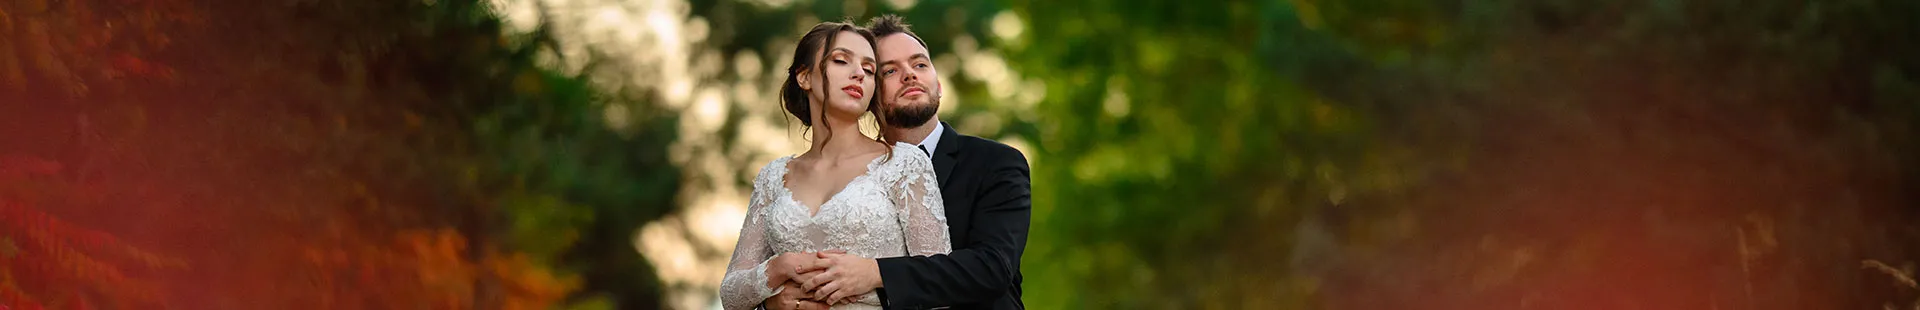 Fotograf ślubny wedding.pl